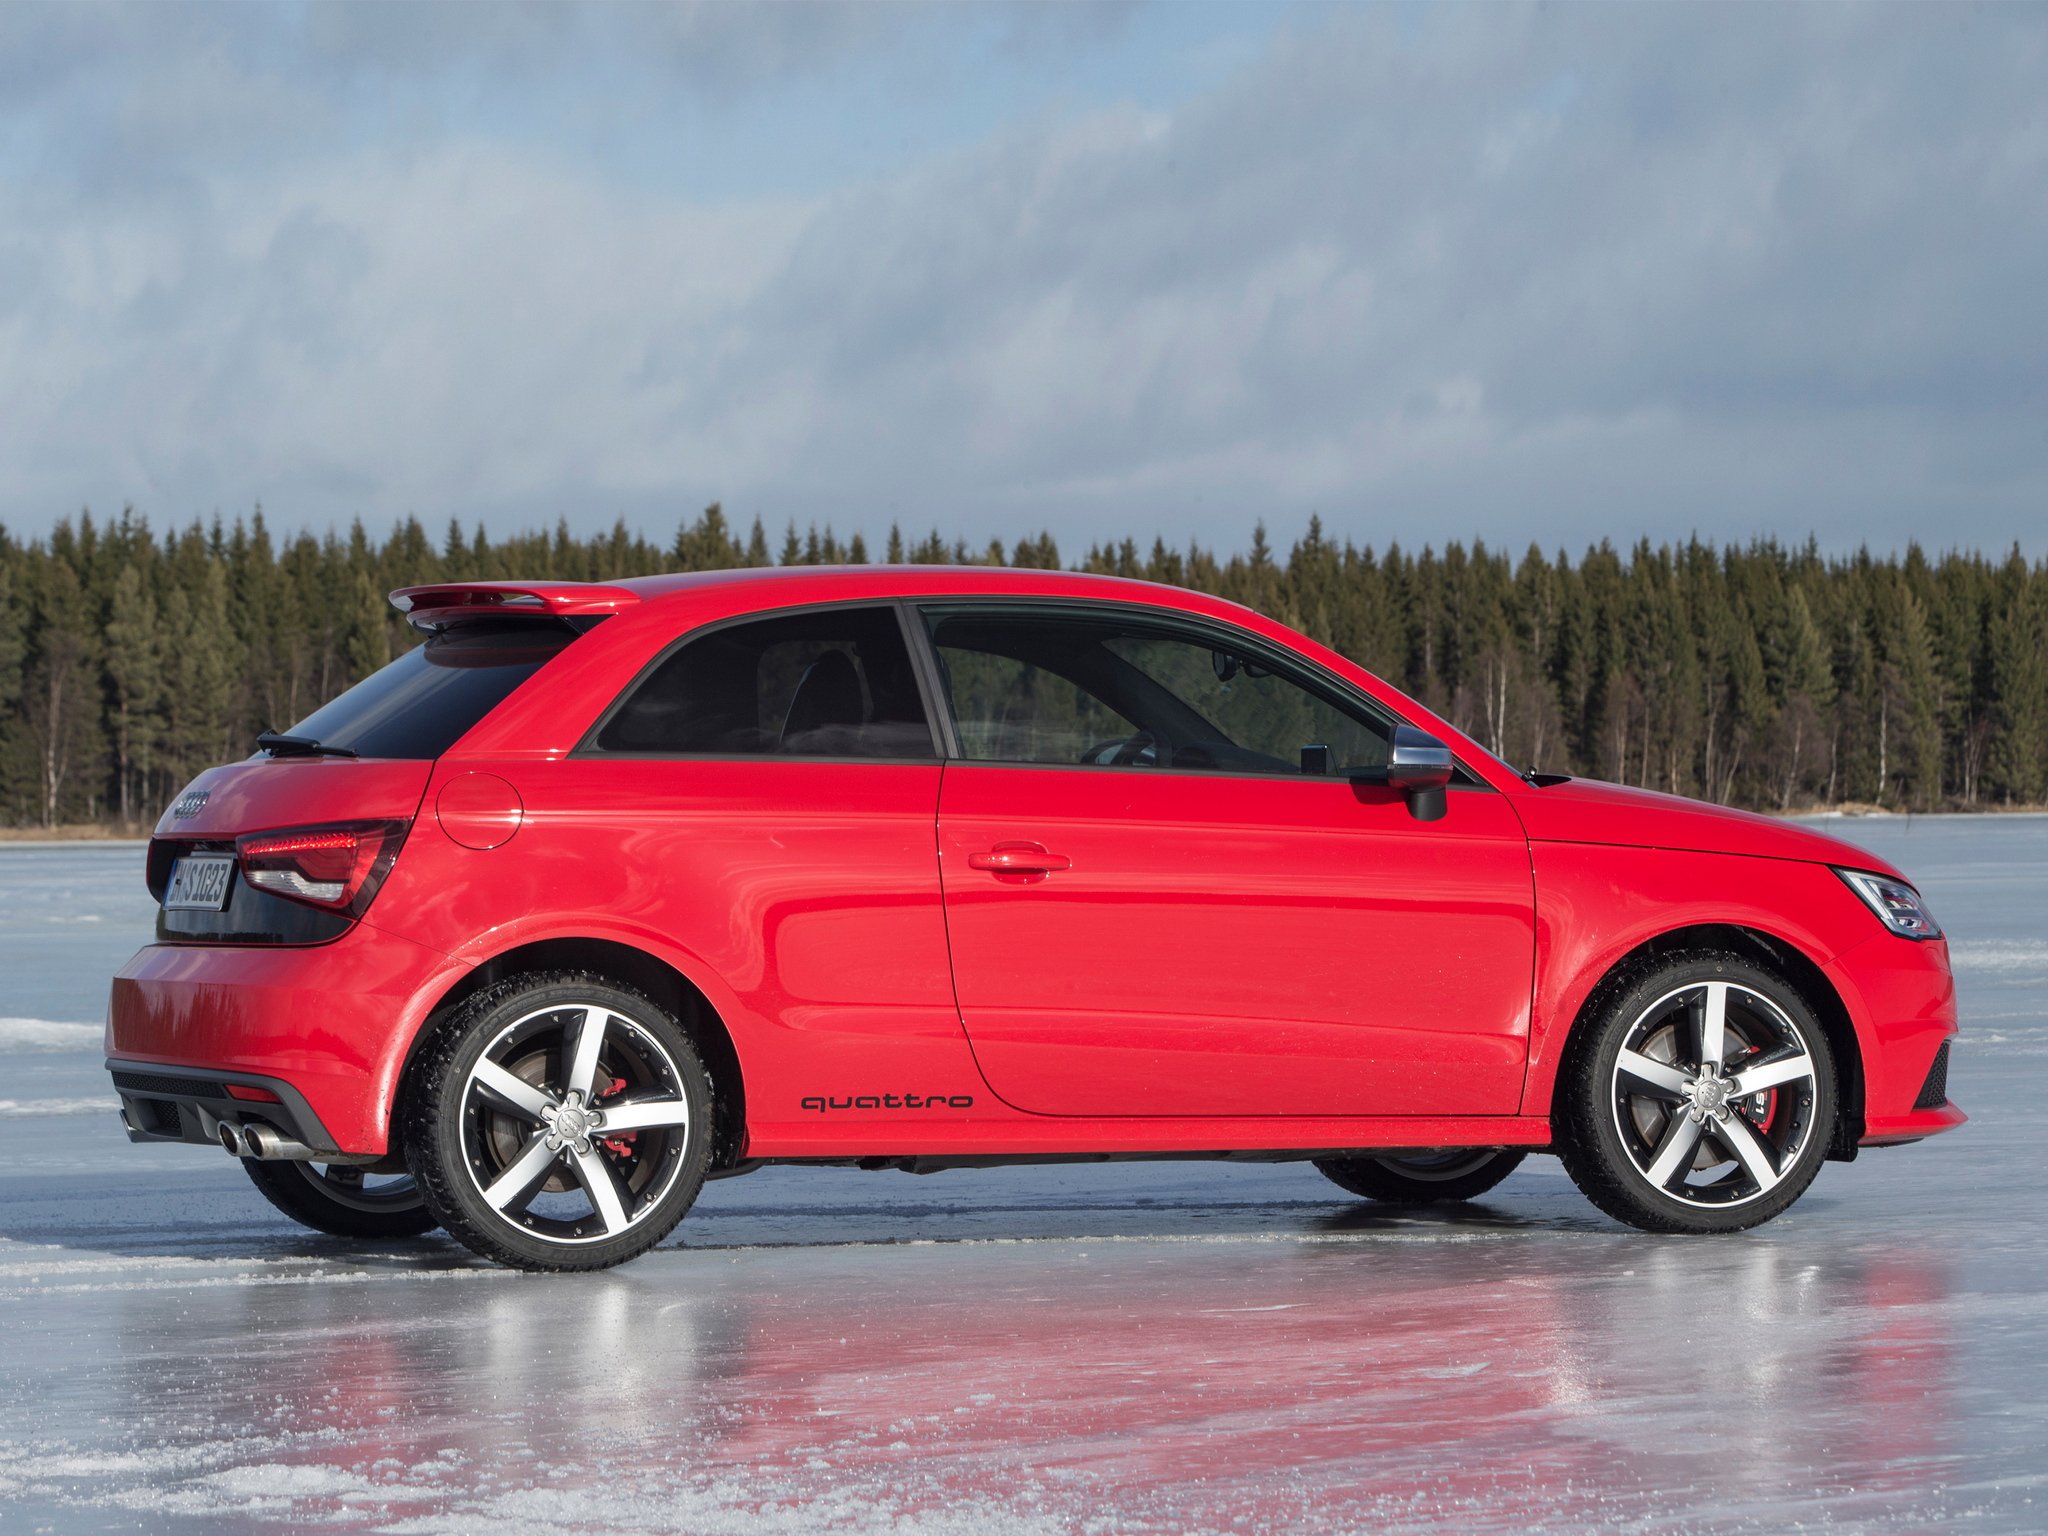 2014, Audi, S 1, Quattro Wallpaper